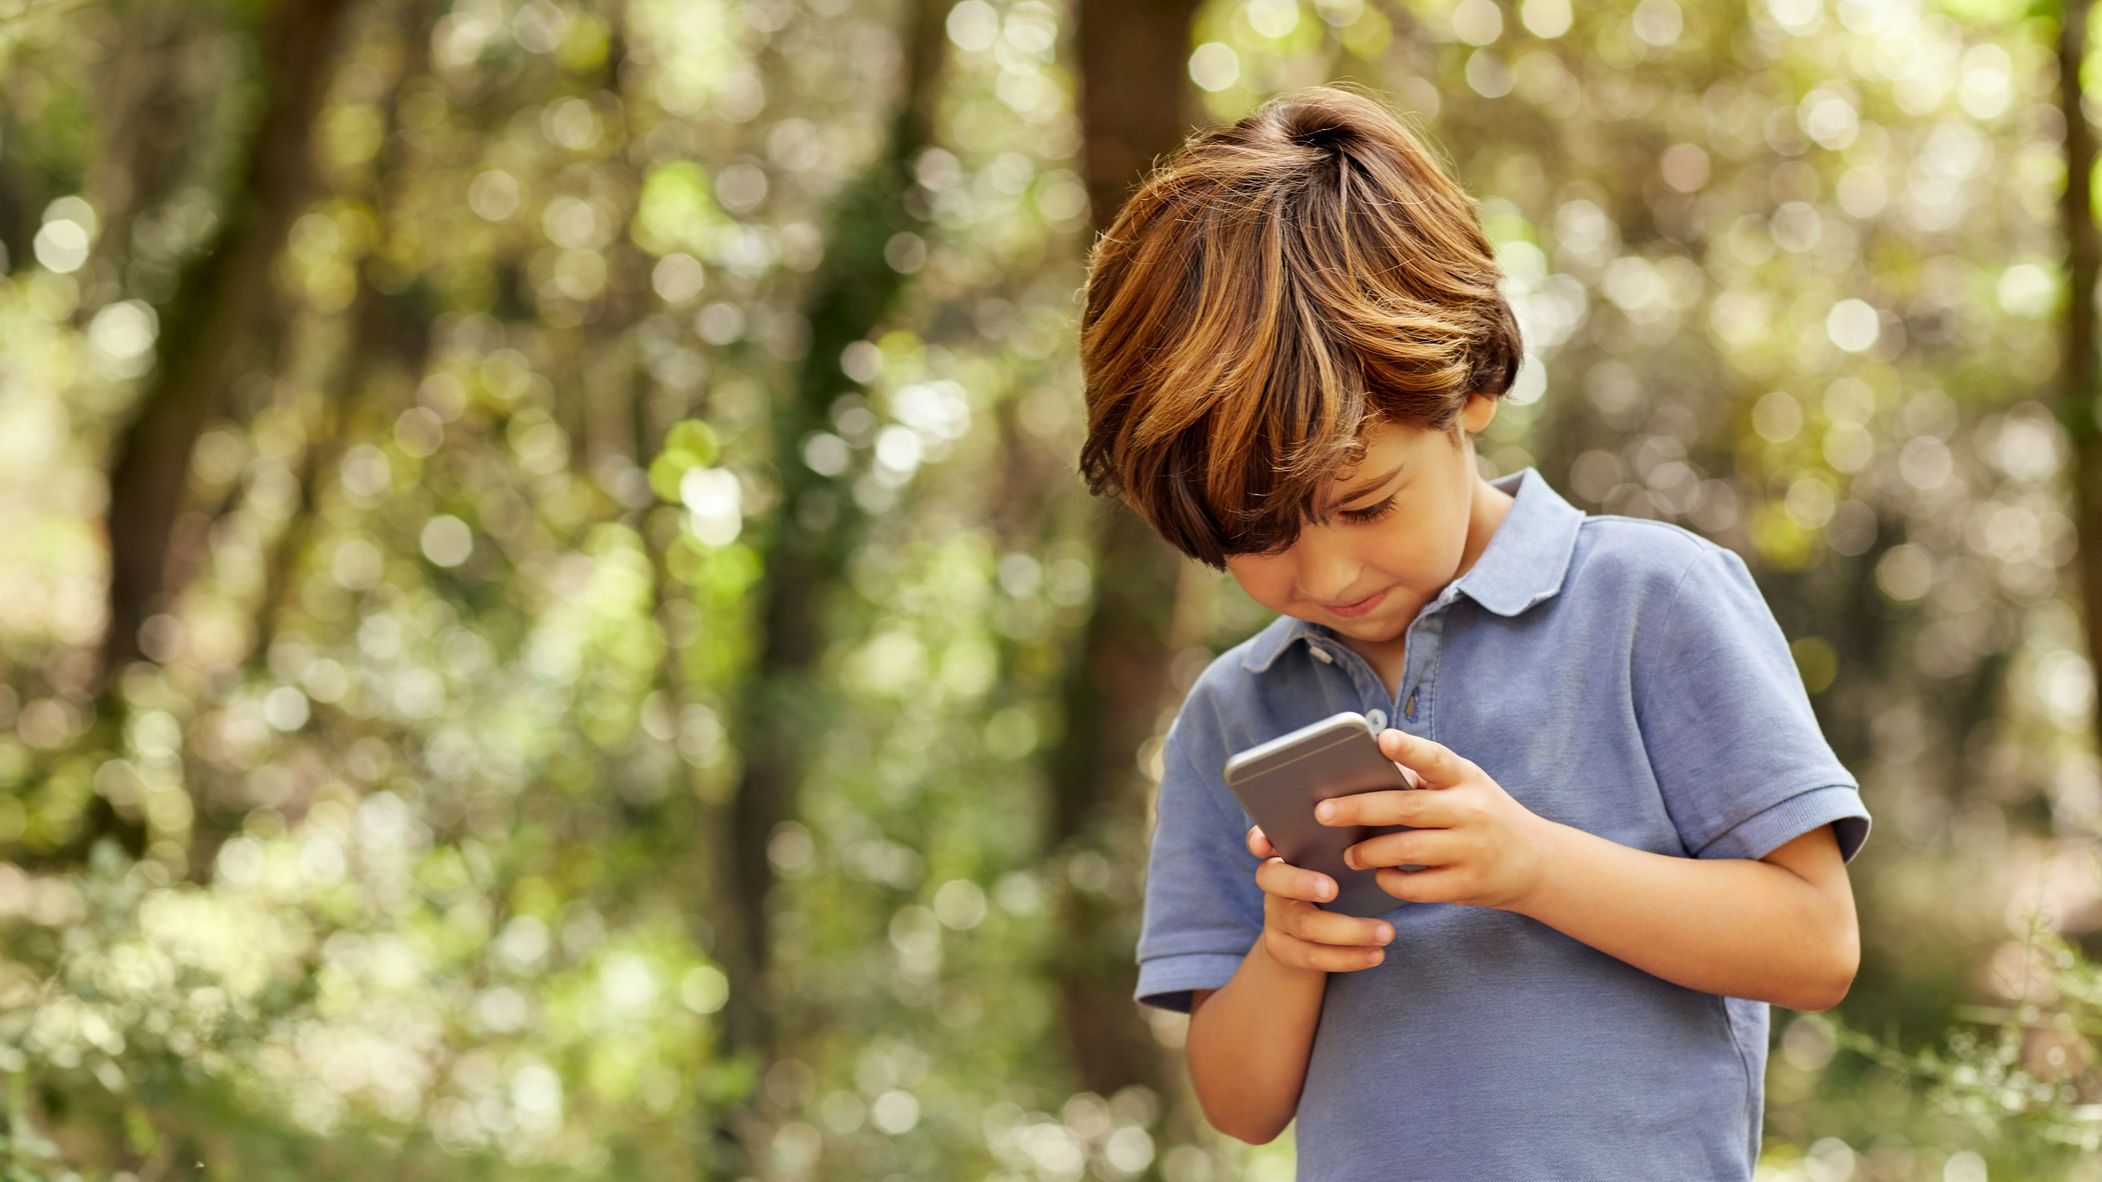 El 16% de los niños tiene su primer smartphone antes de los diez